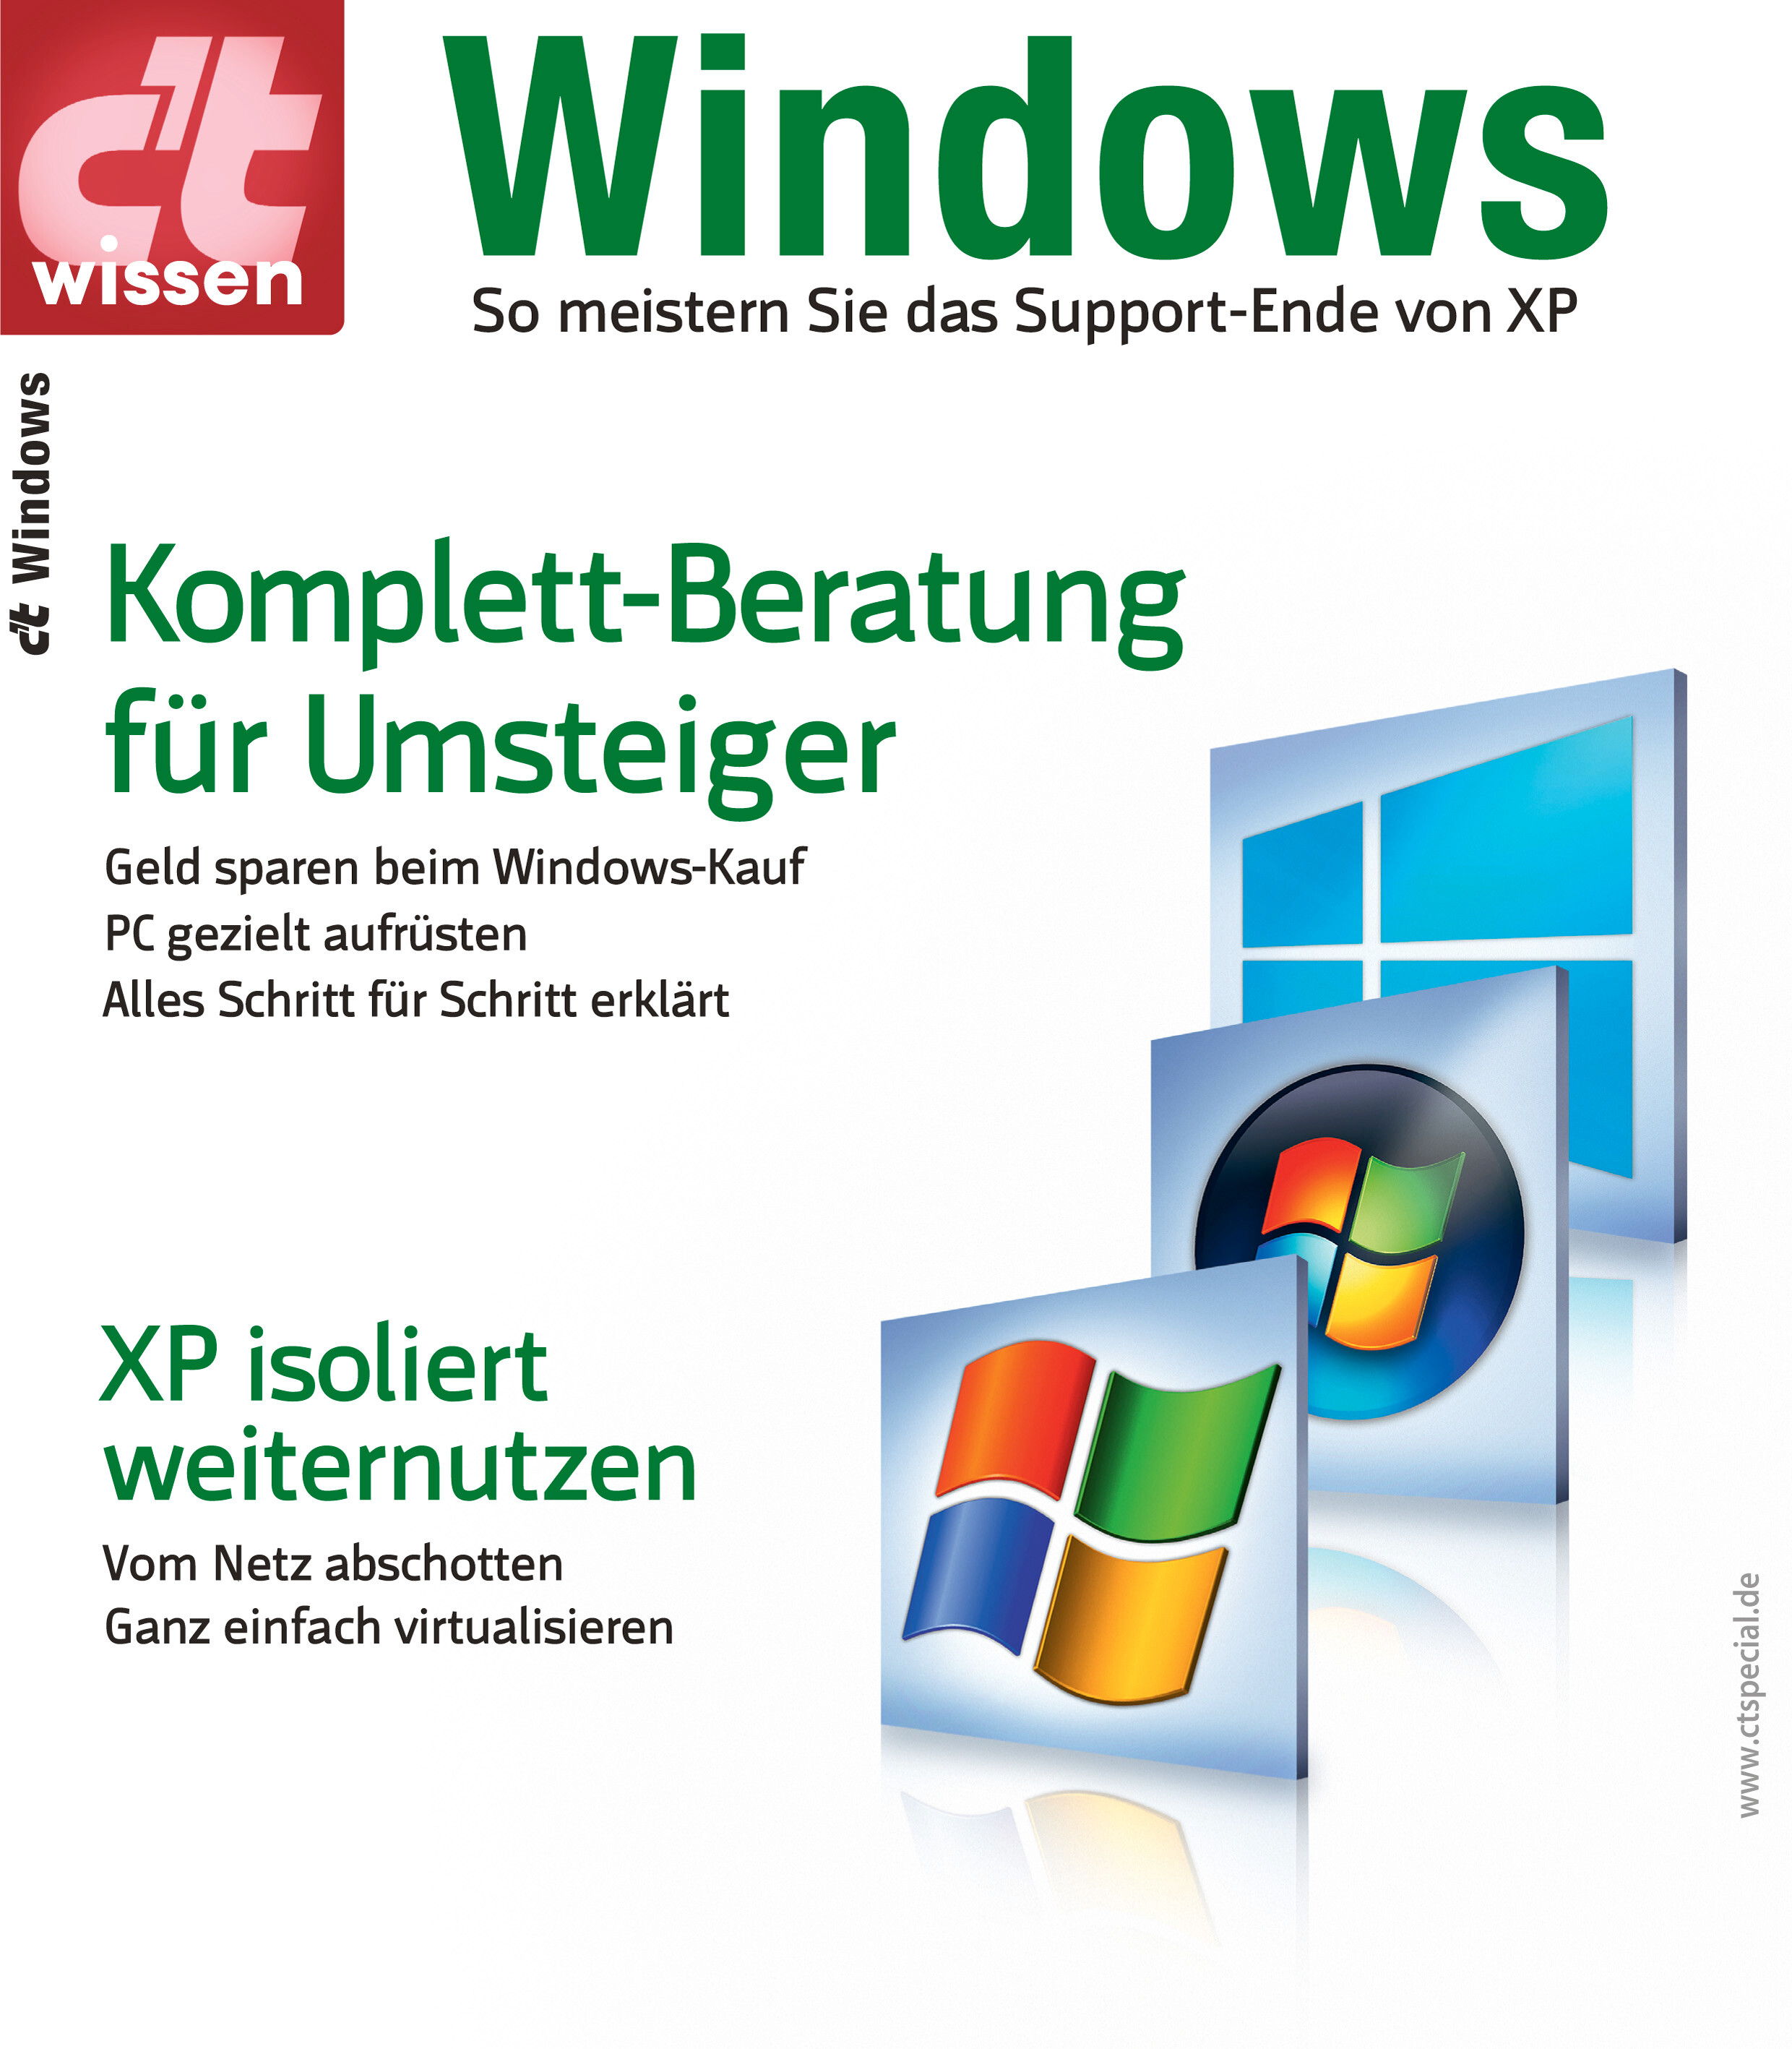 c't wissen Windows 2014